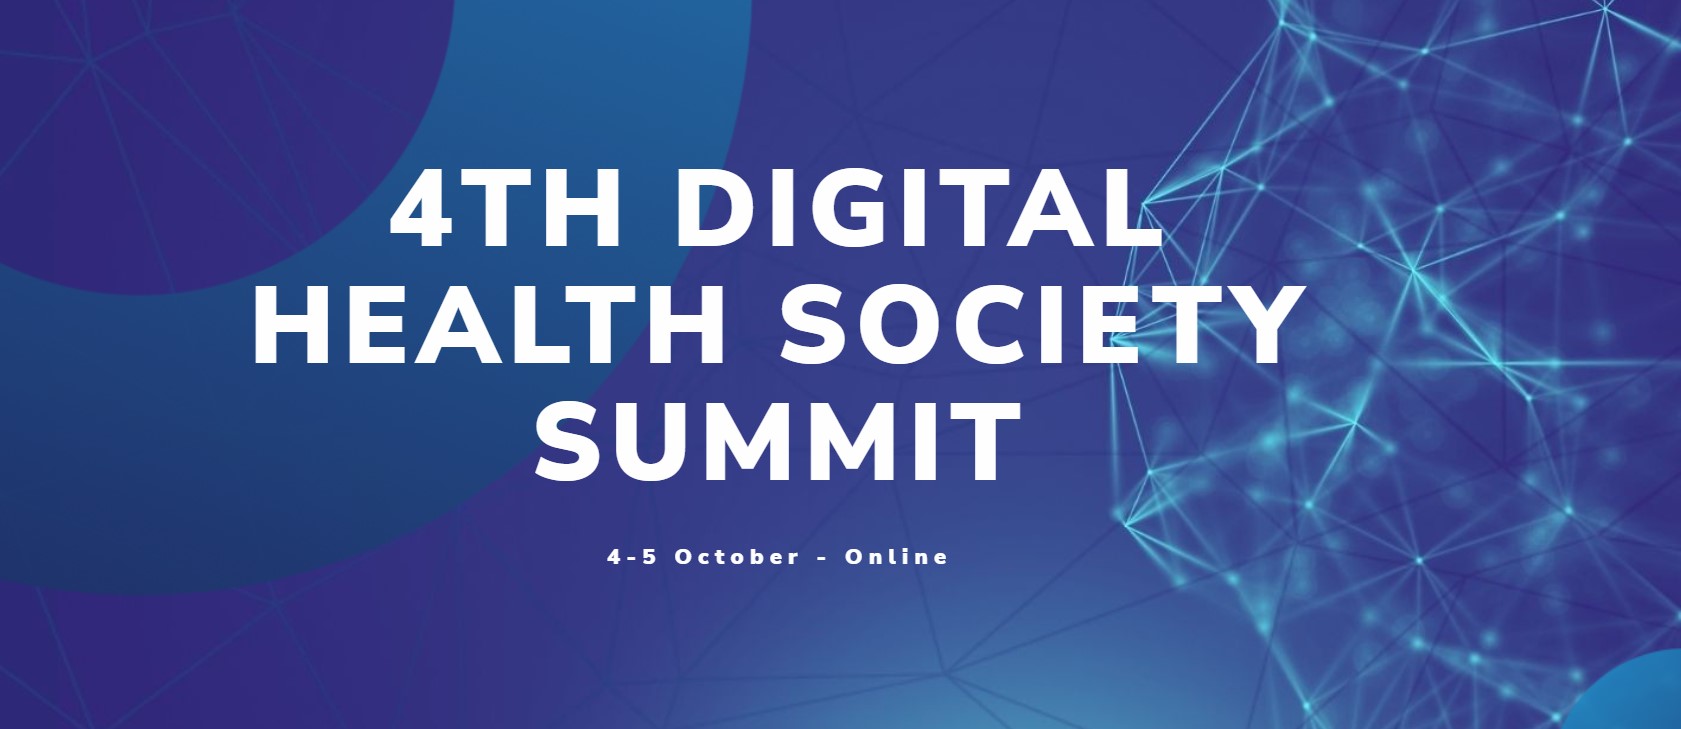 4th digital health summit